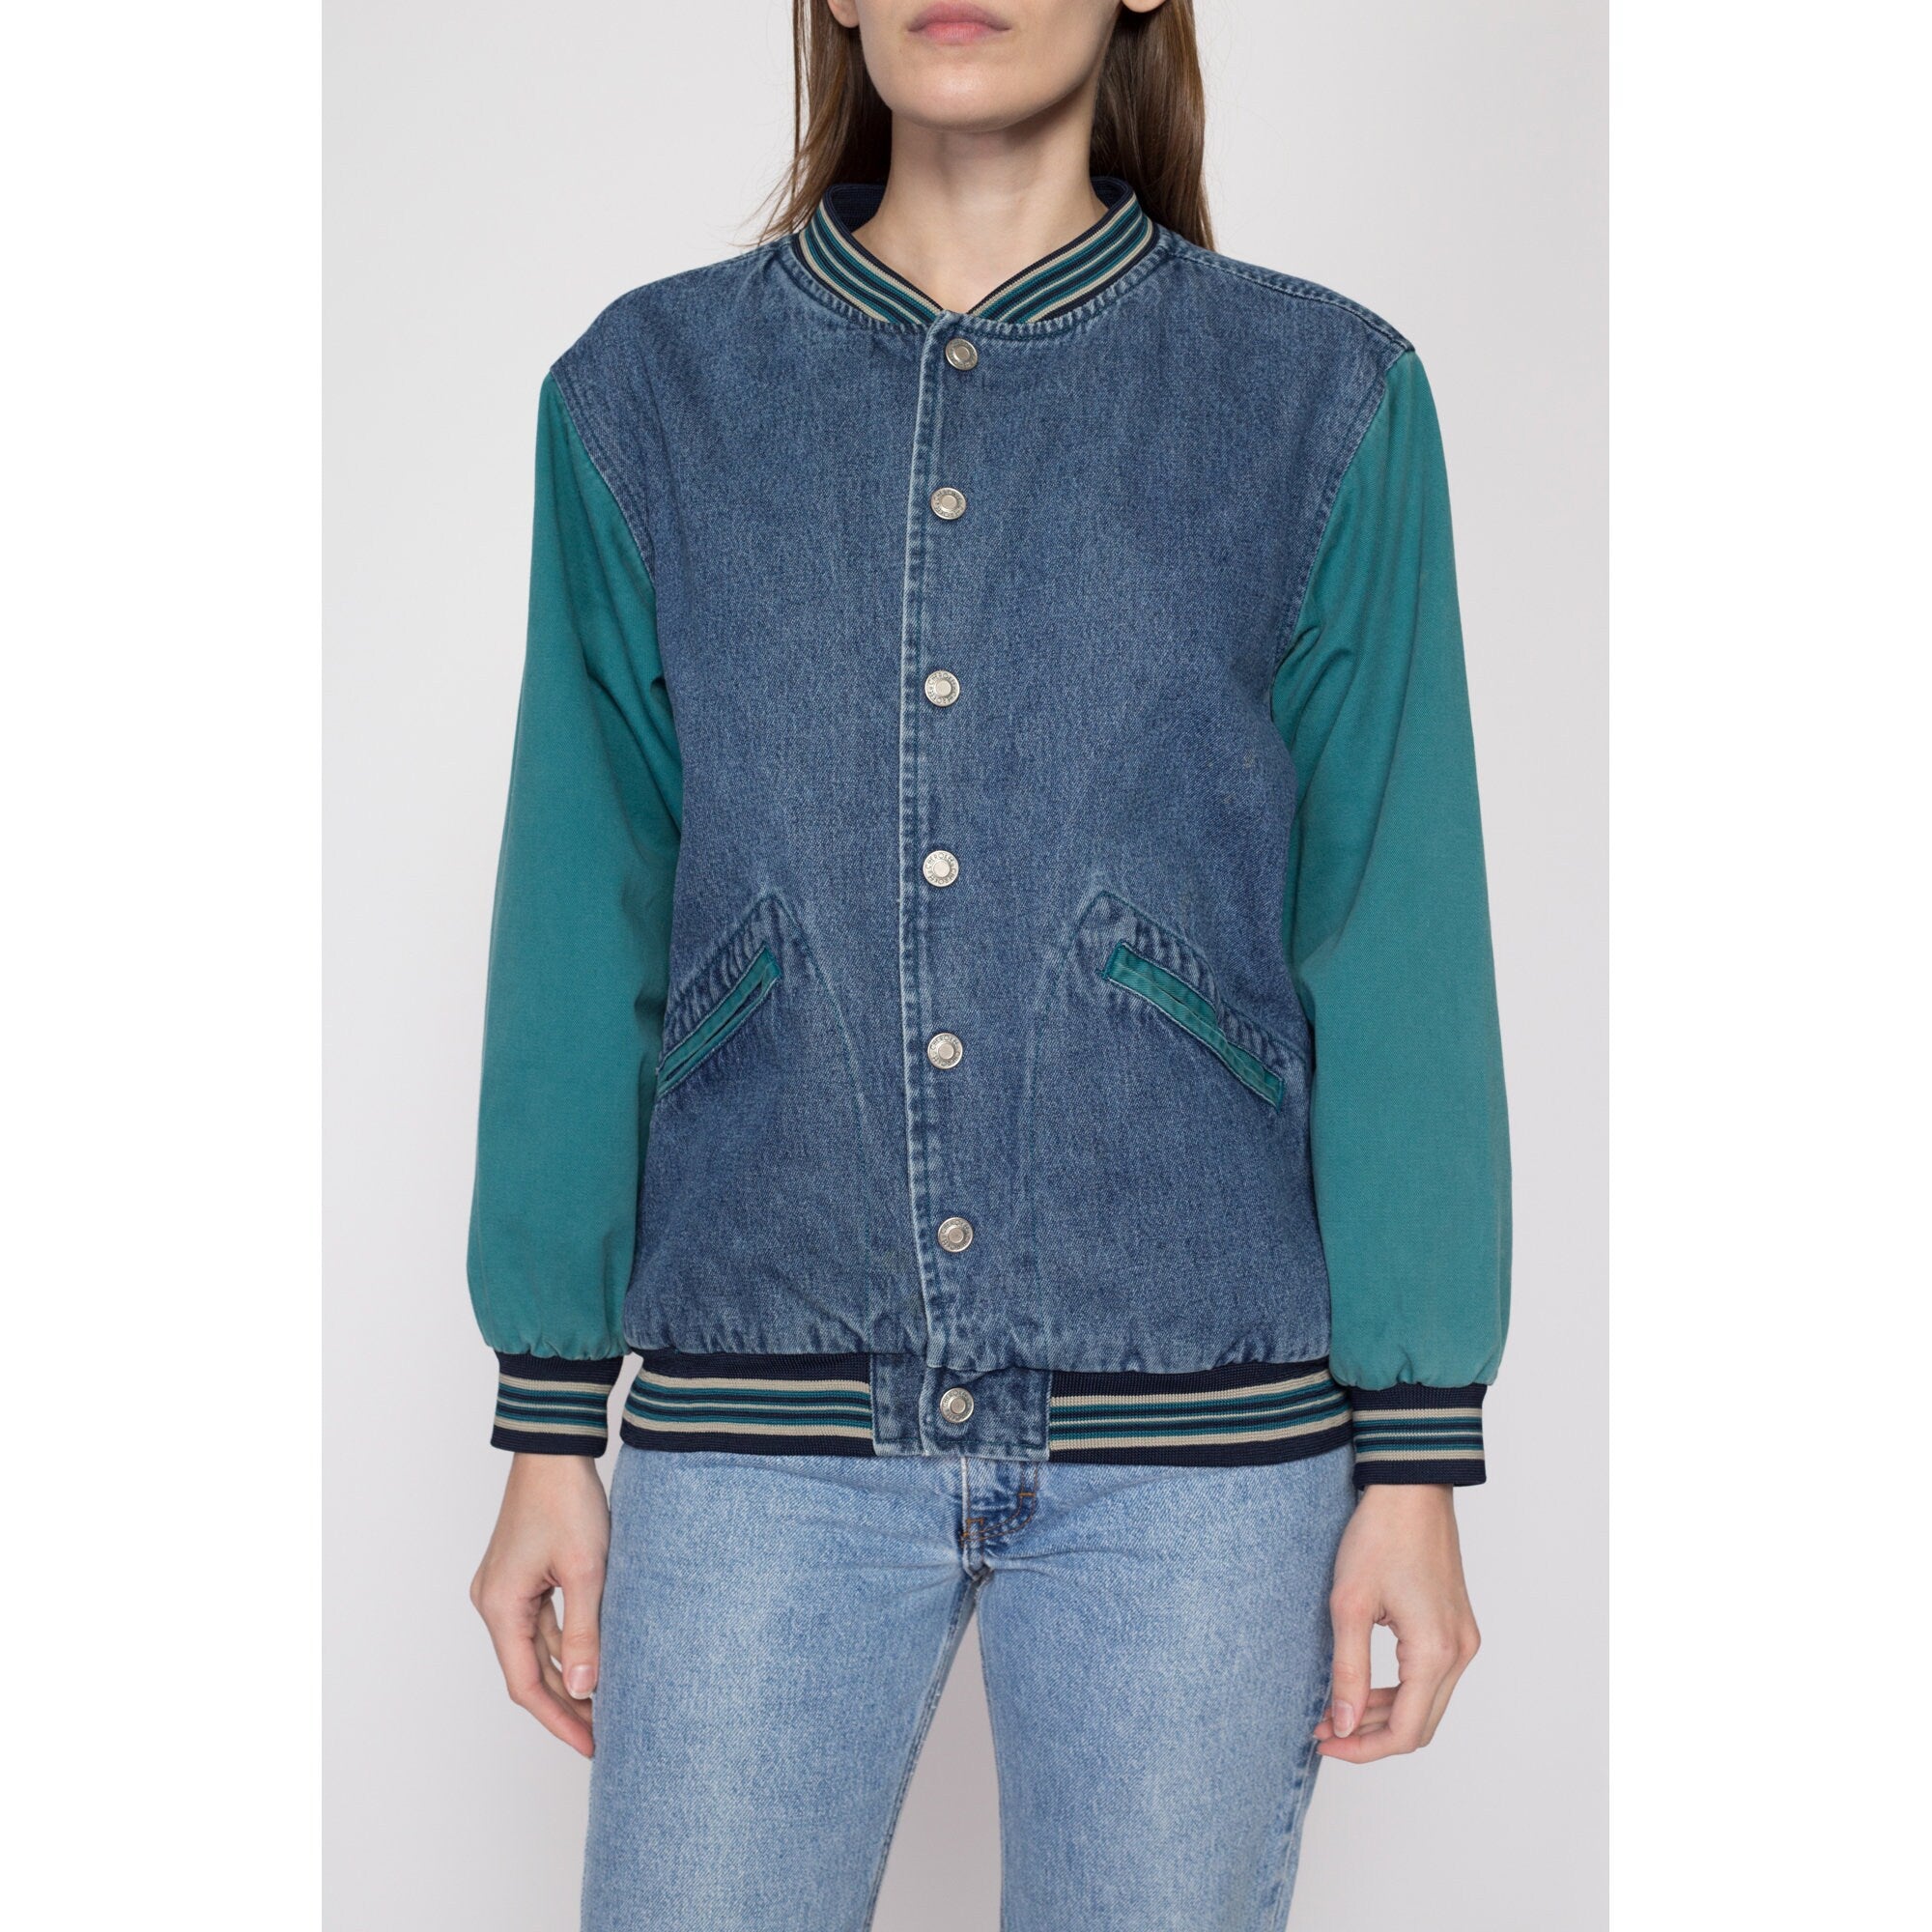 Cotton-Washed Vintage Denim Varsity Jacket with Khaki Sleeves (Small) at  Amazon Men's Clothing store